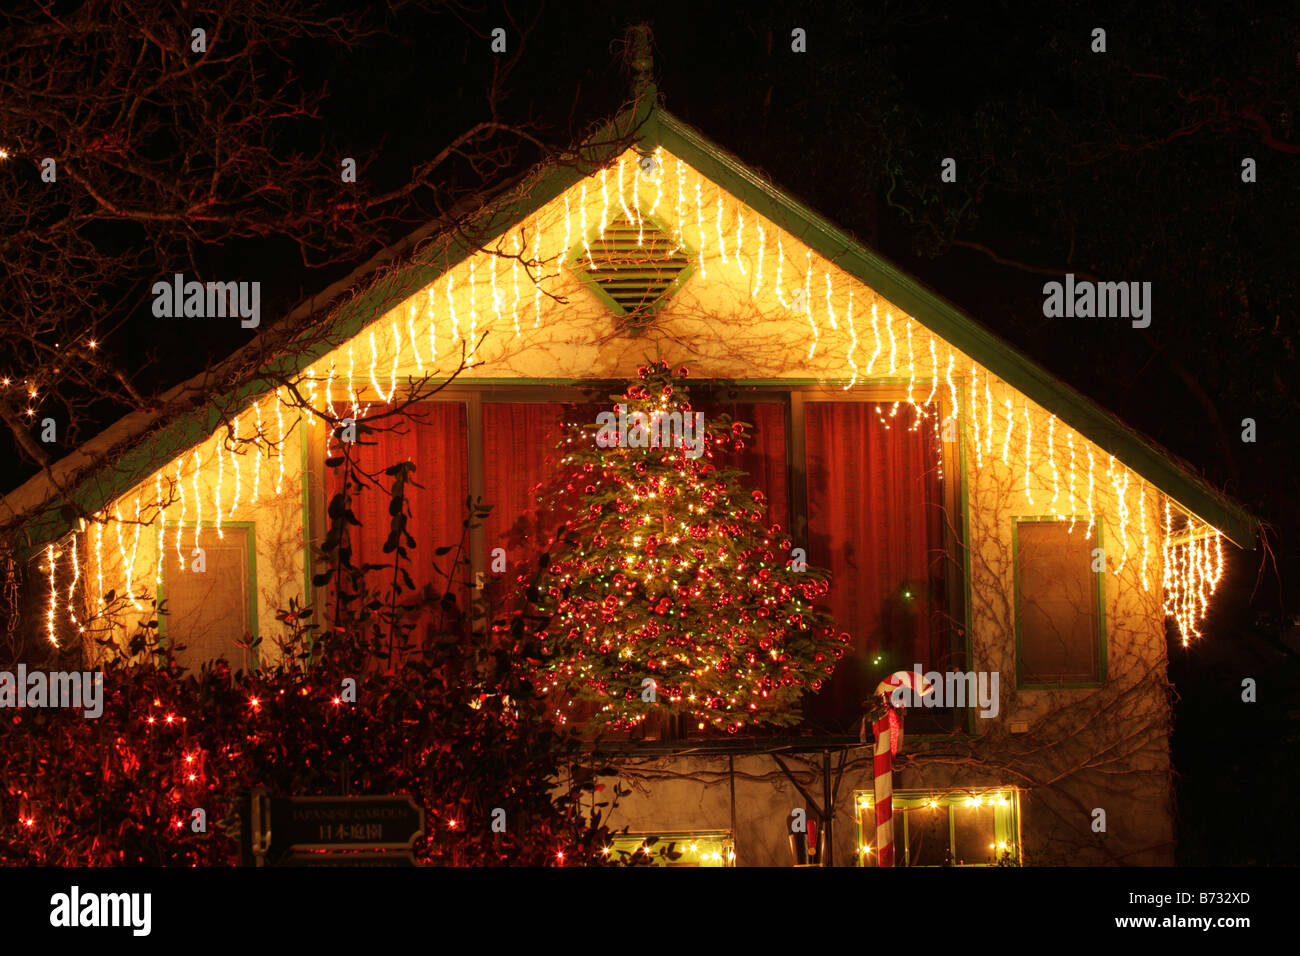 Jährliche Weihnachtsbeleuchtung in der Nacht Butchart Gardens Victoria British Columbia Kanada Stockfoto